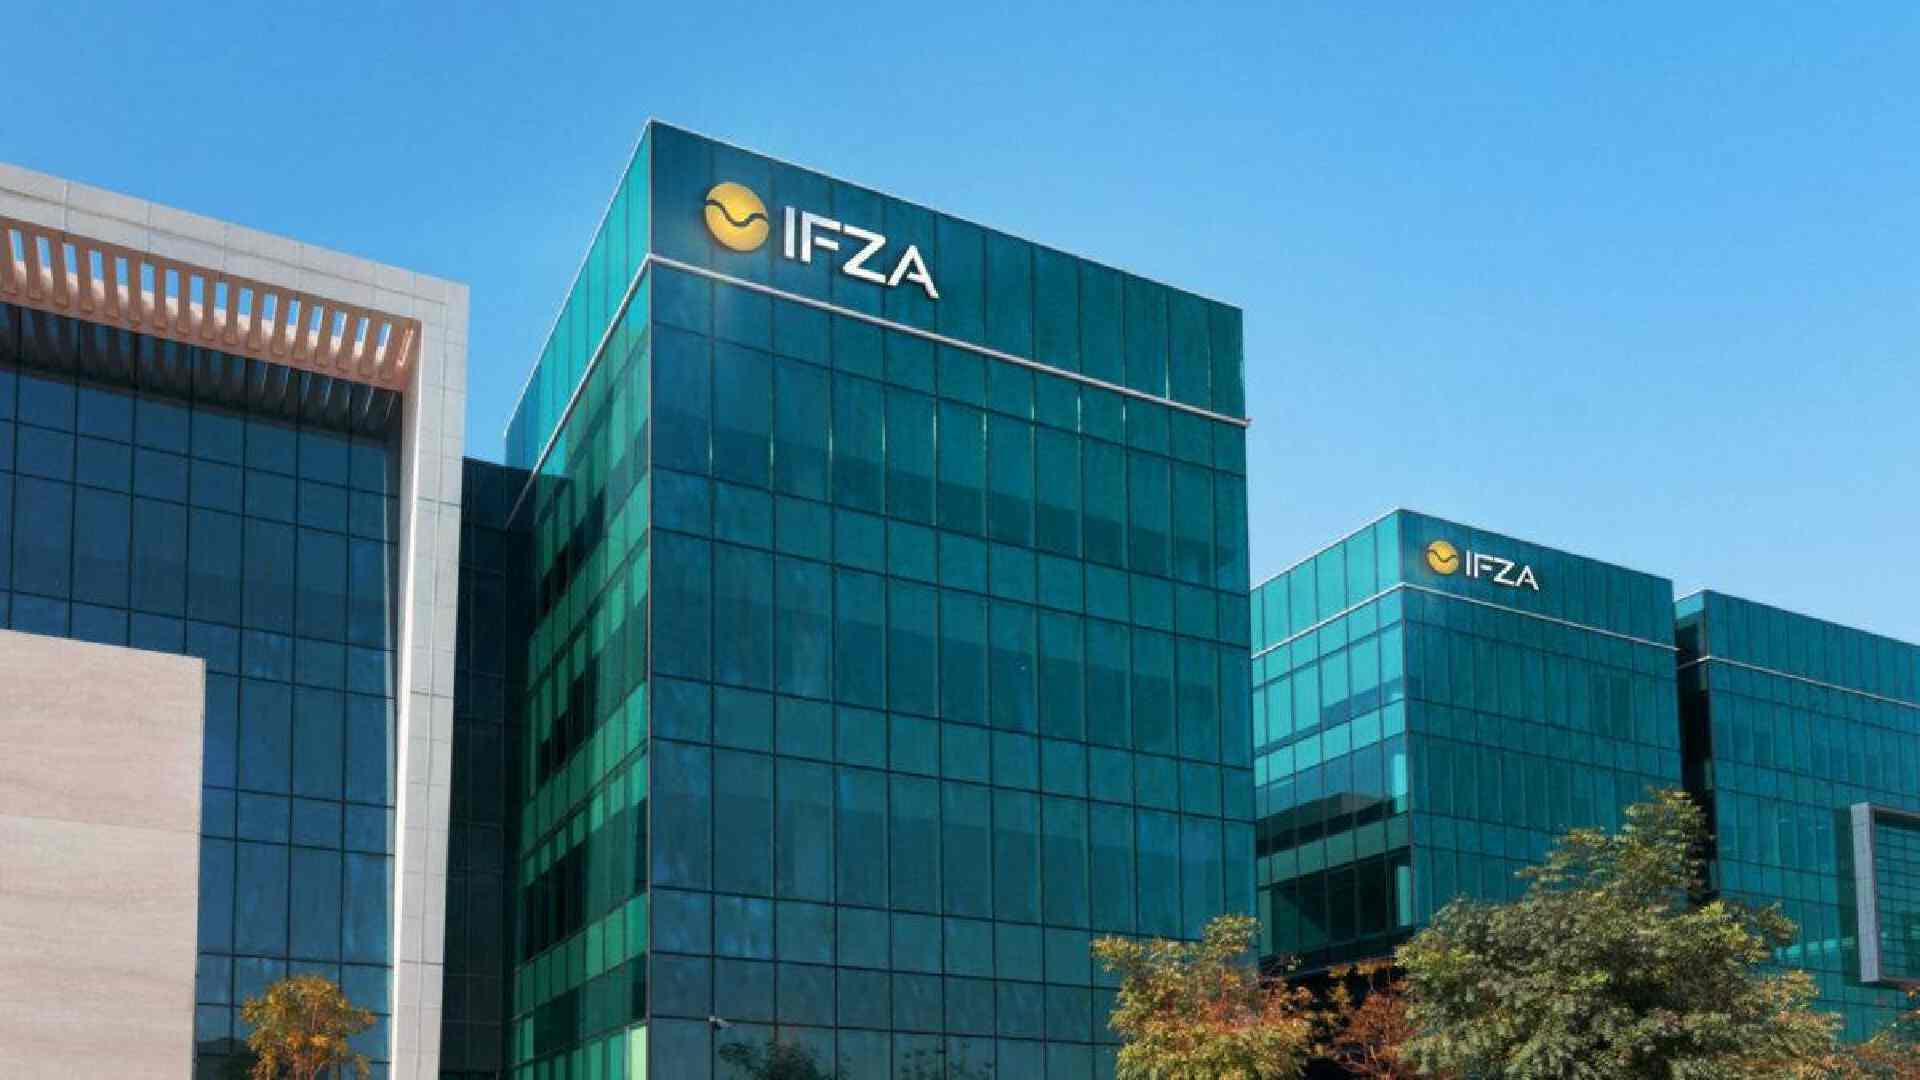 IFZA company formation